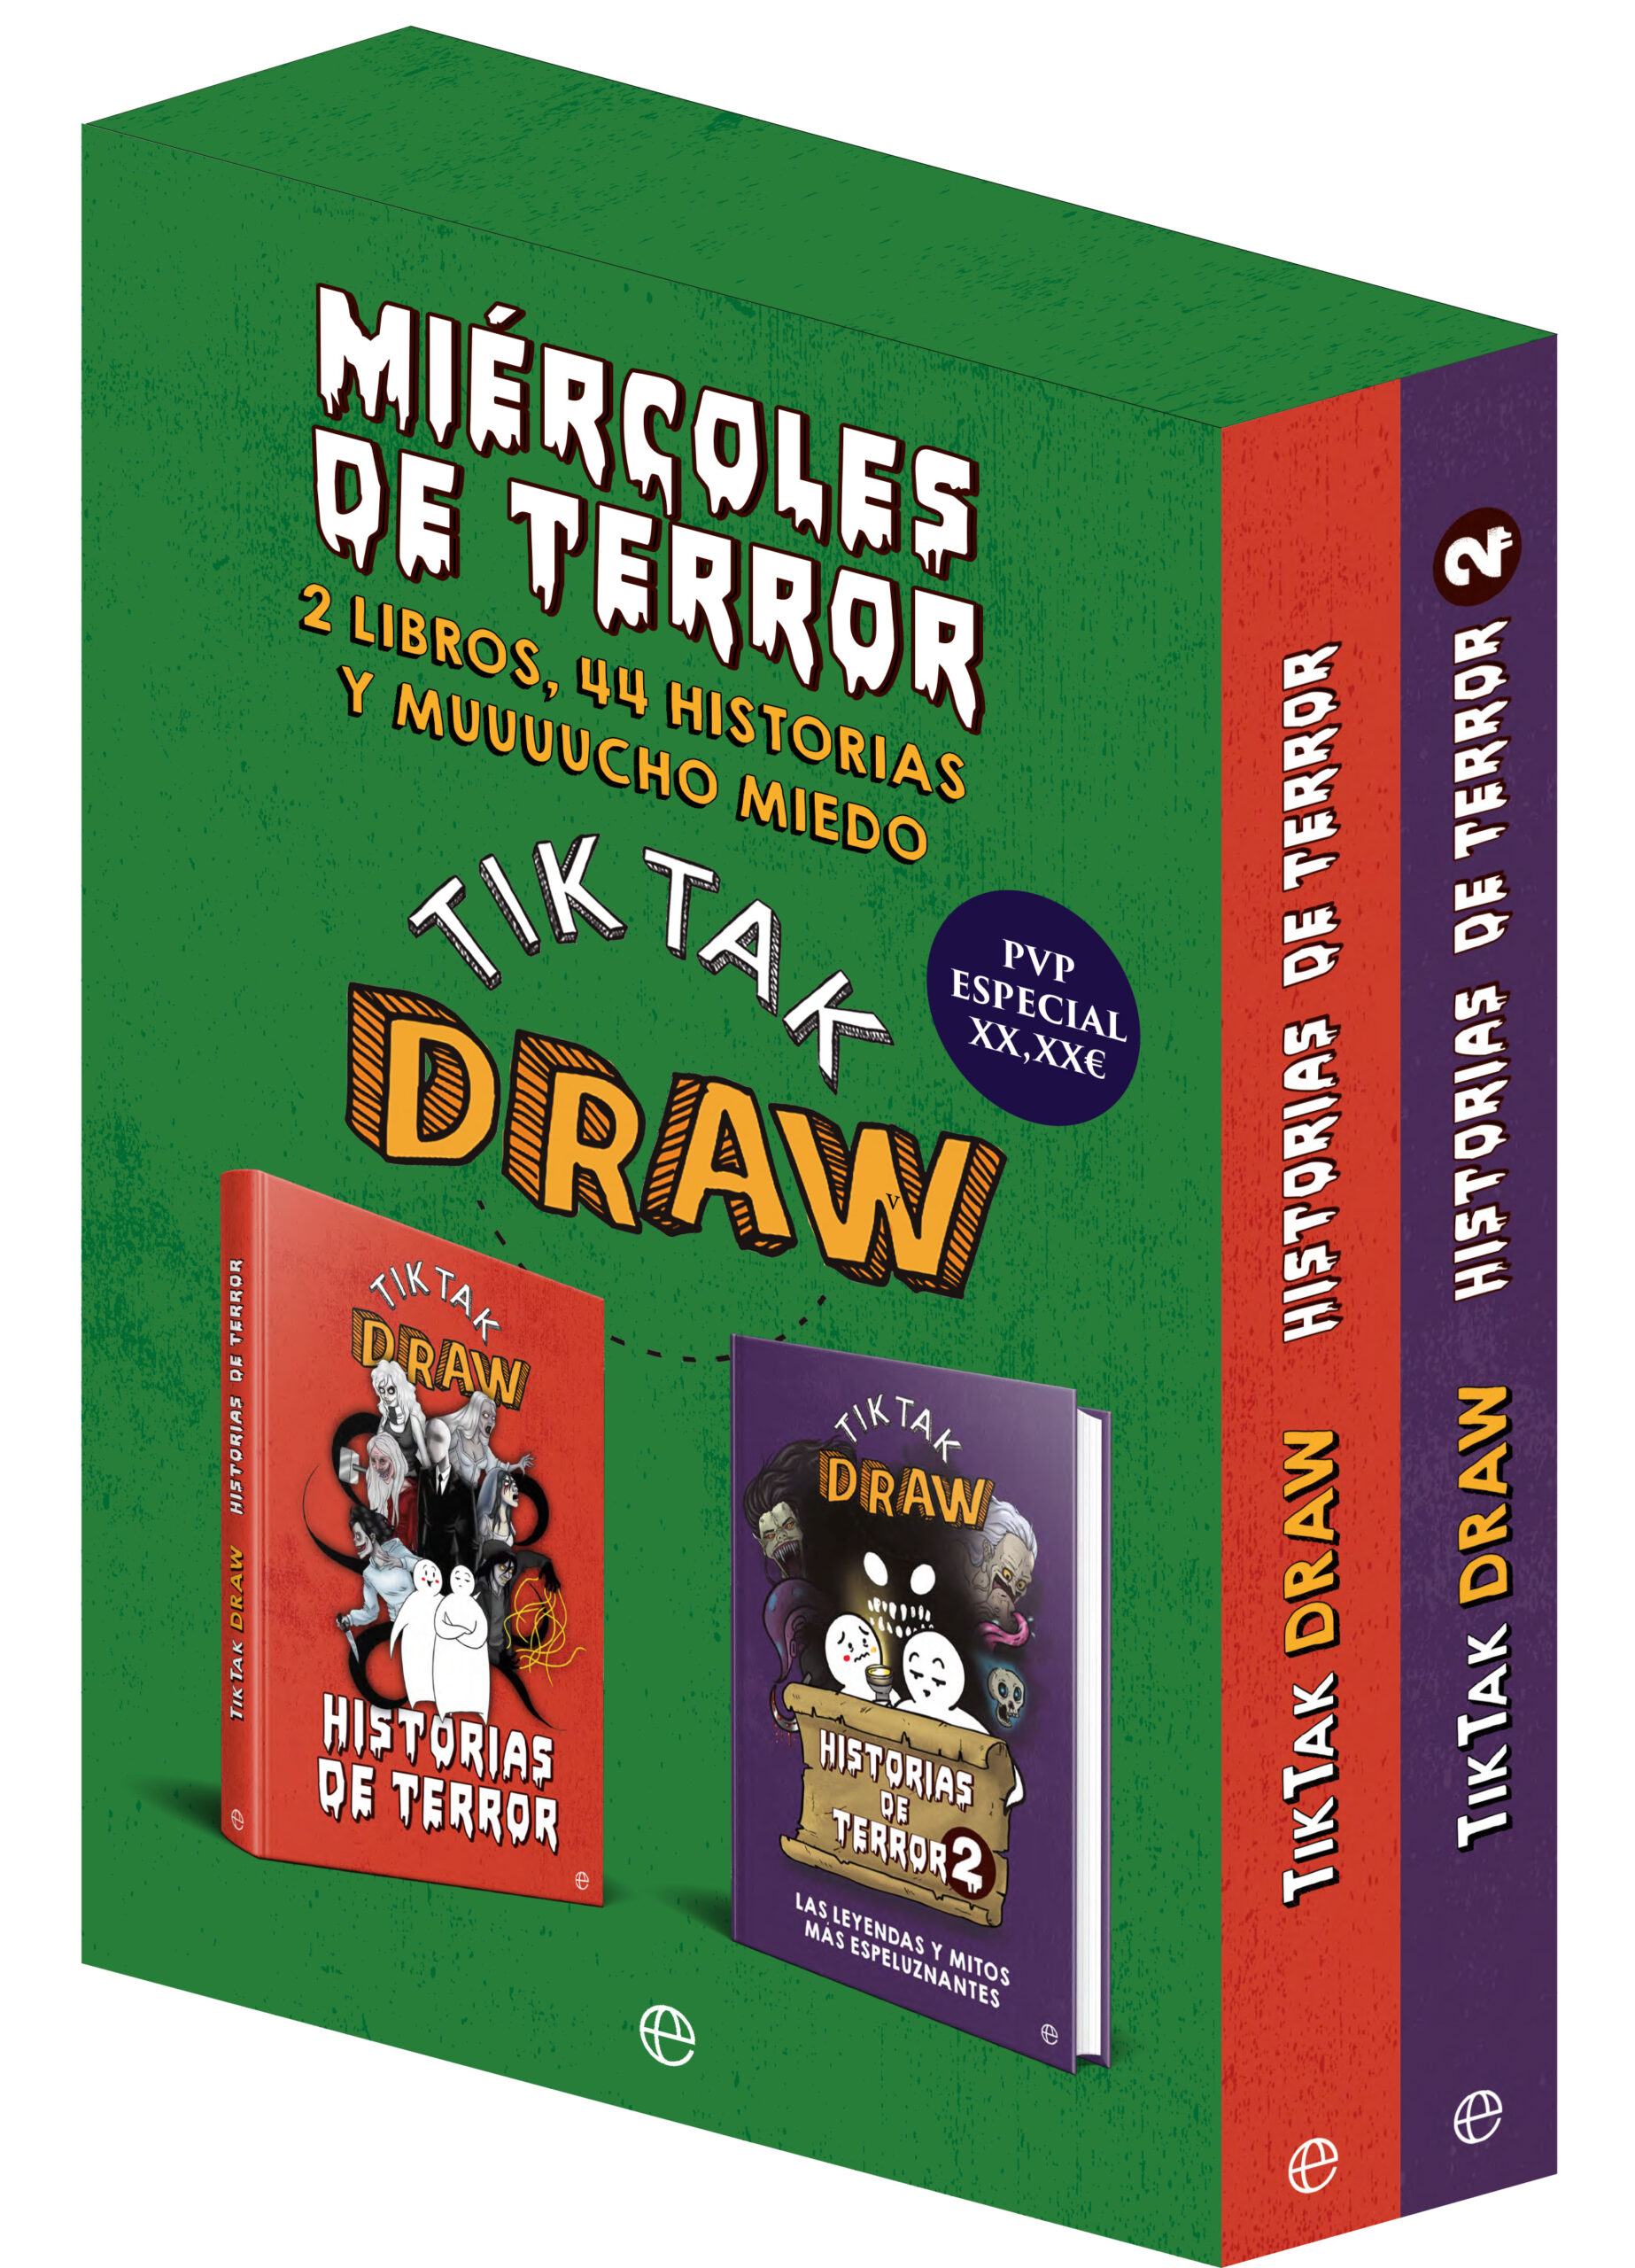 Libro: Historias de Terror por Tiktak Draw